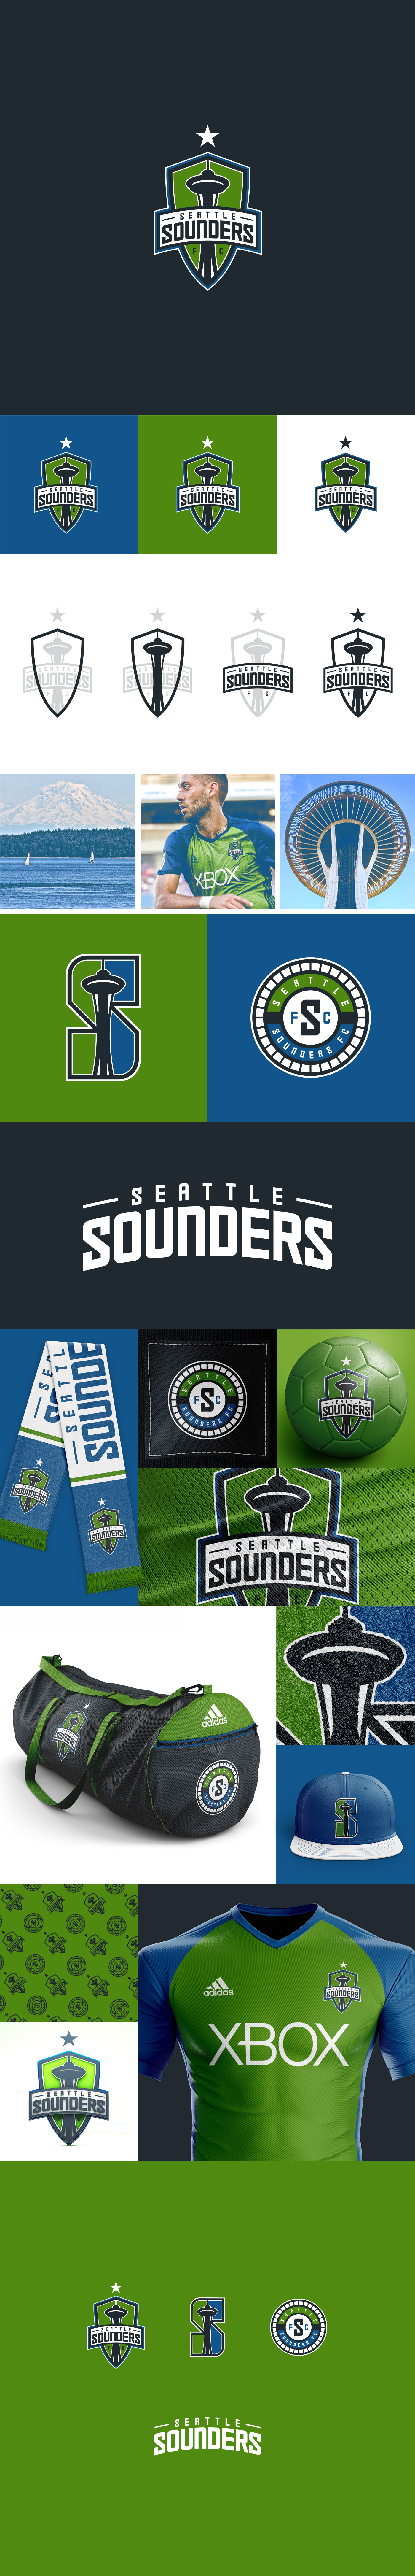 seattle sounders FC Seattle Sounders mls soccer football Premier League sports branding 